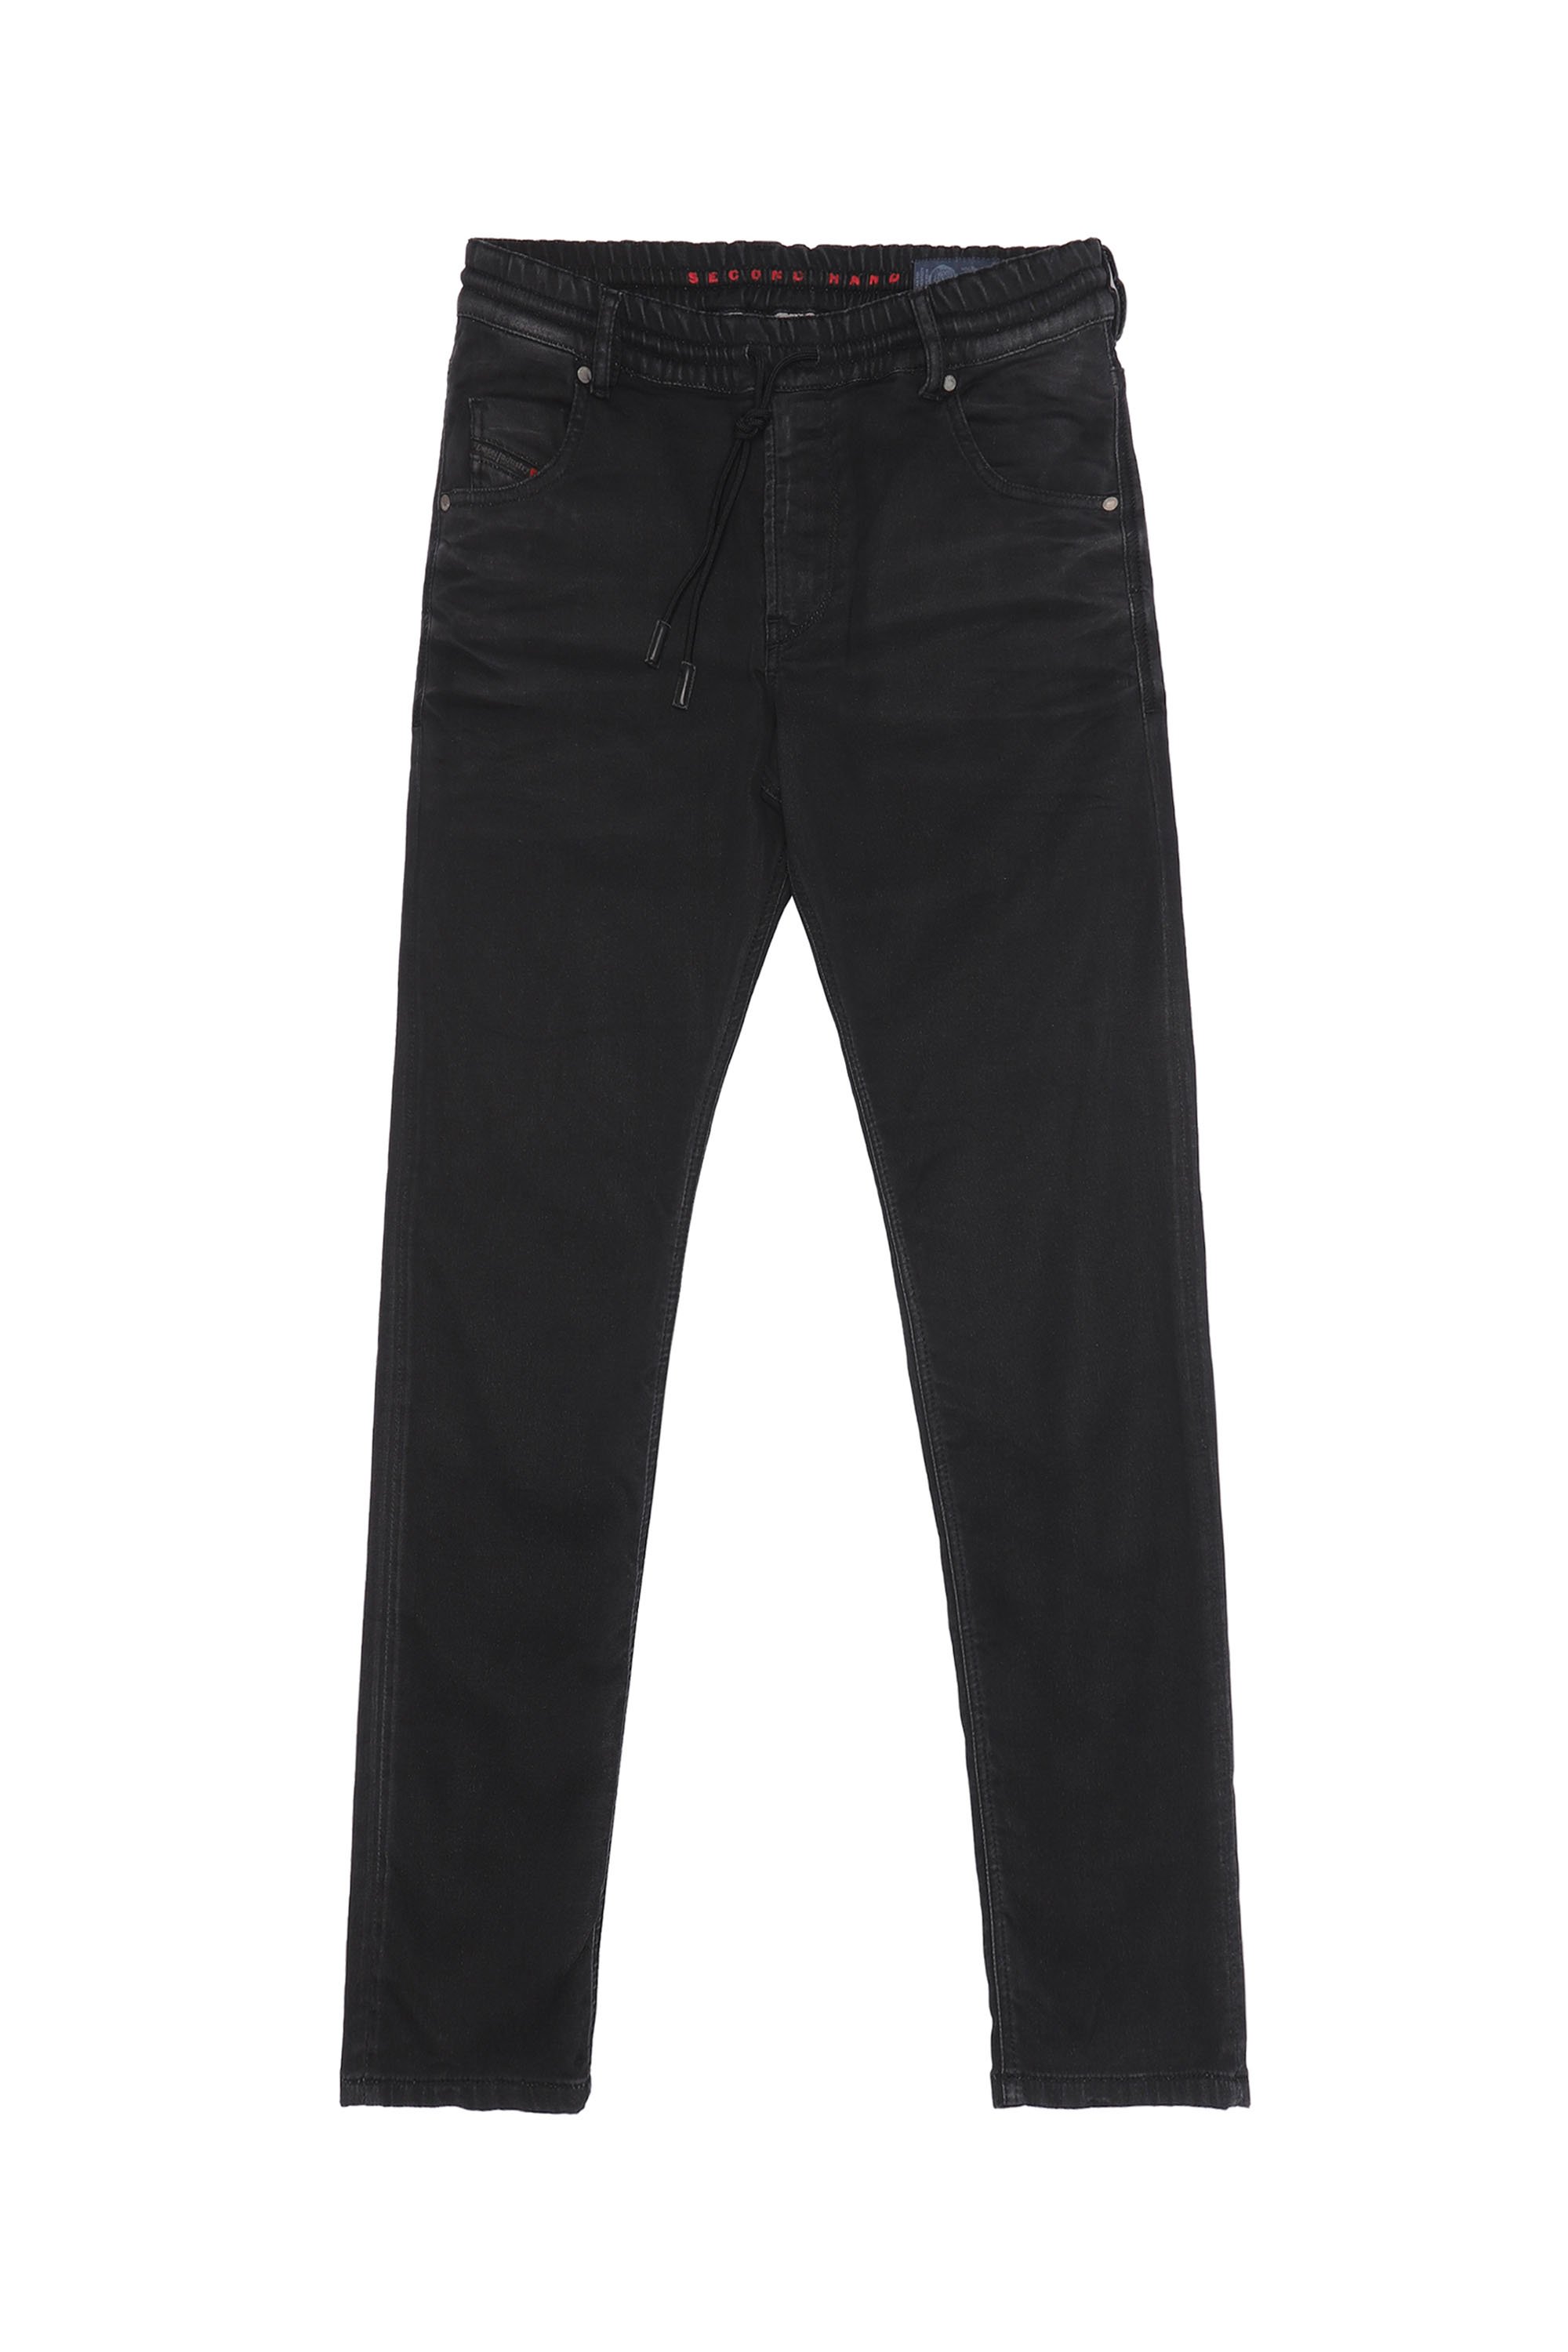 KRAILEY JoggJeans®, Schwarz/Dunkelgrau - Jeans